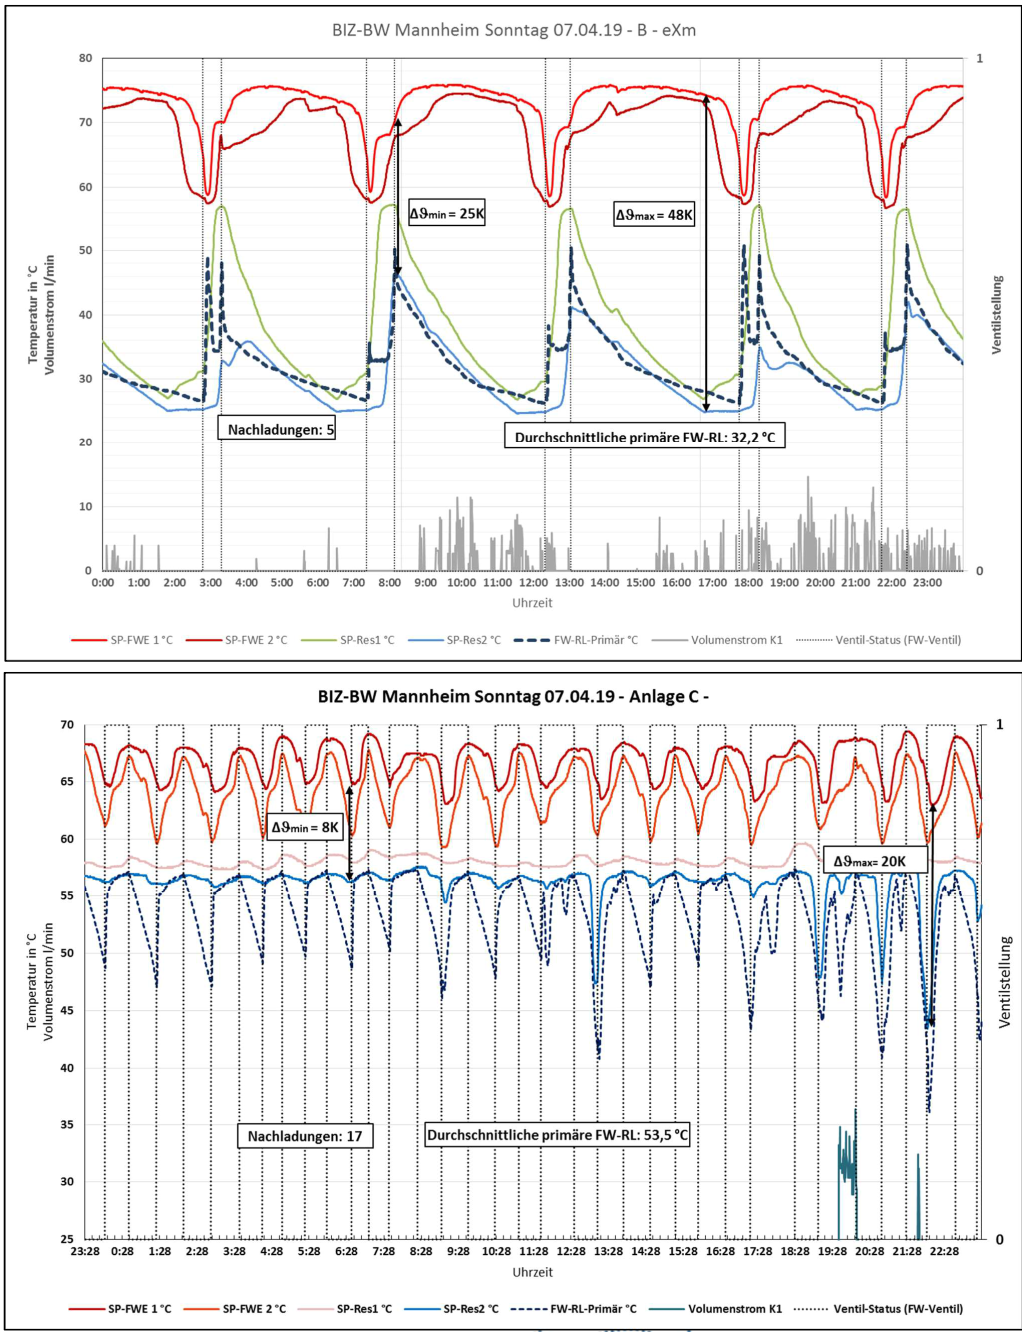 ExM Egzergia Maszyna cieplna wykresy porównanie systemów 